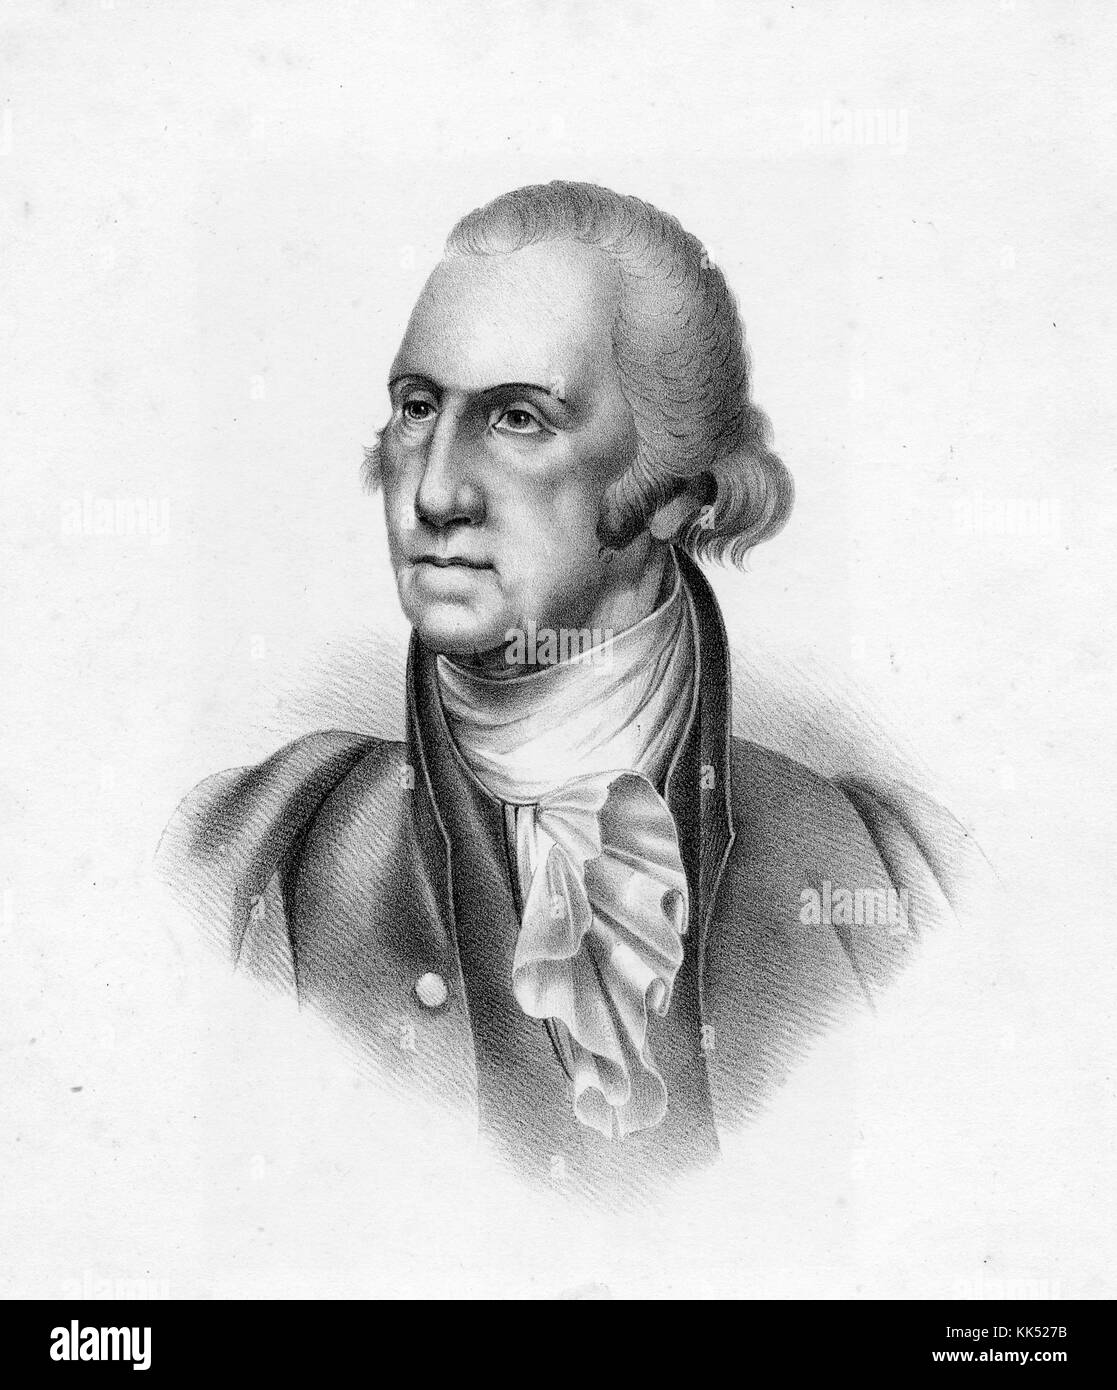 Eingraviertes Porträt von George Washington, mit Rüschen und ernstem Ausdruck, Washington, DC, 1800. Aus der New York Public Library. Stockfoto